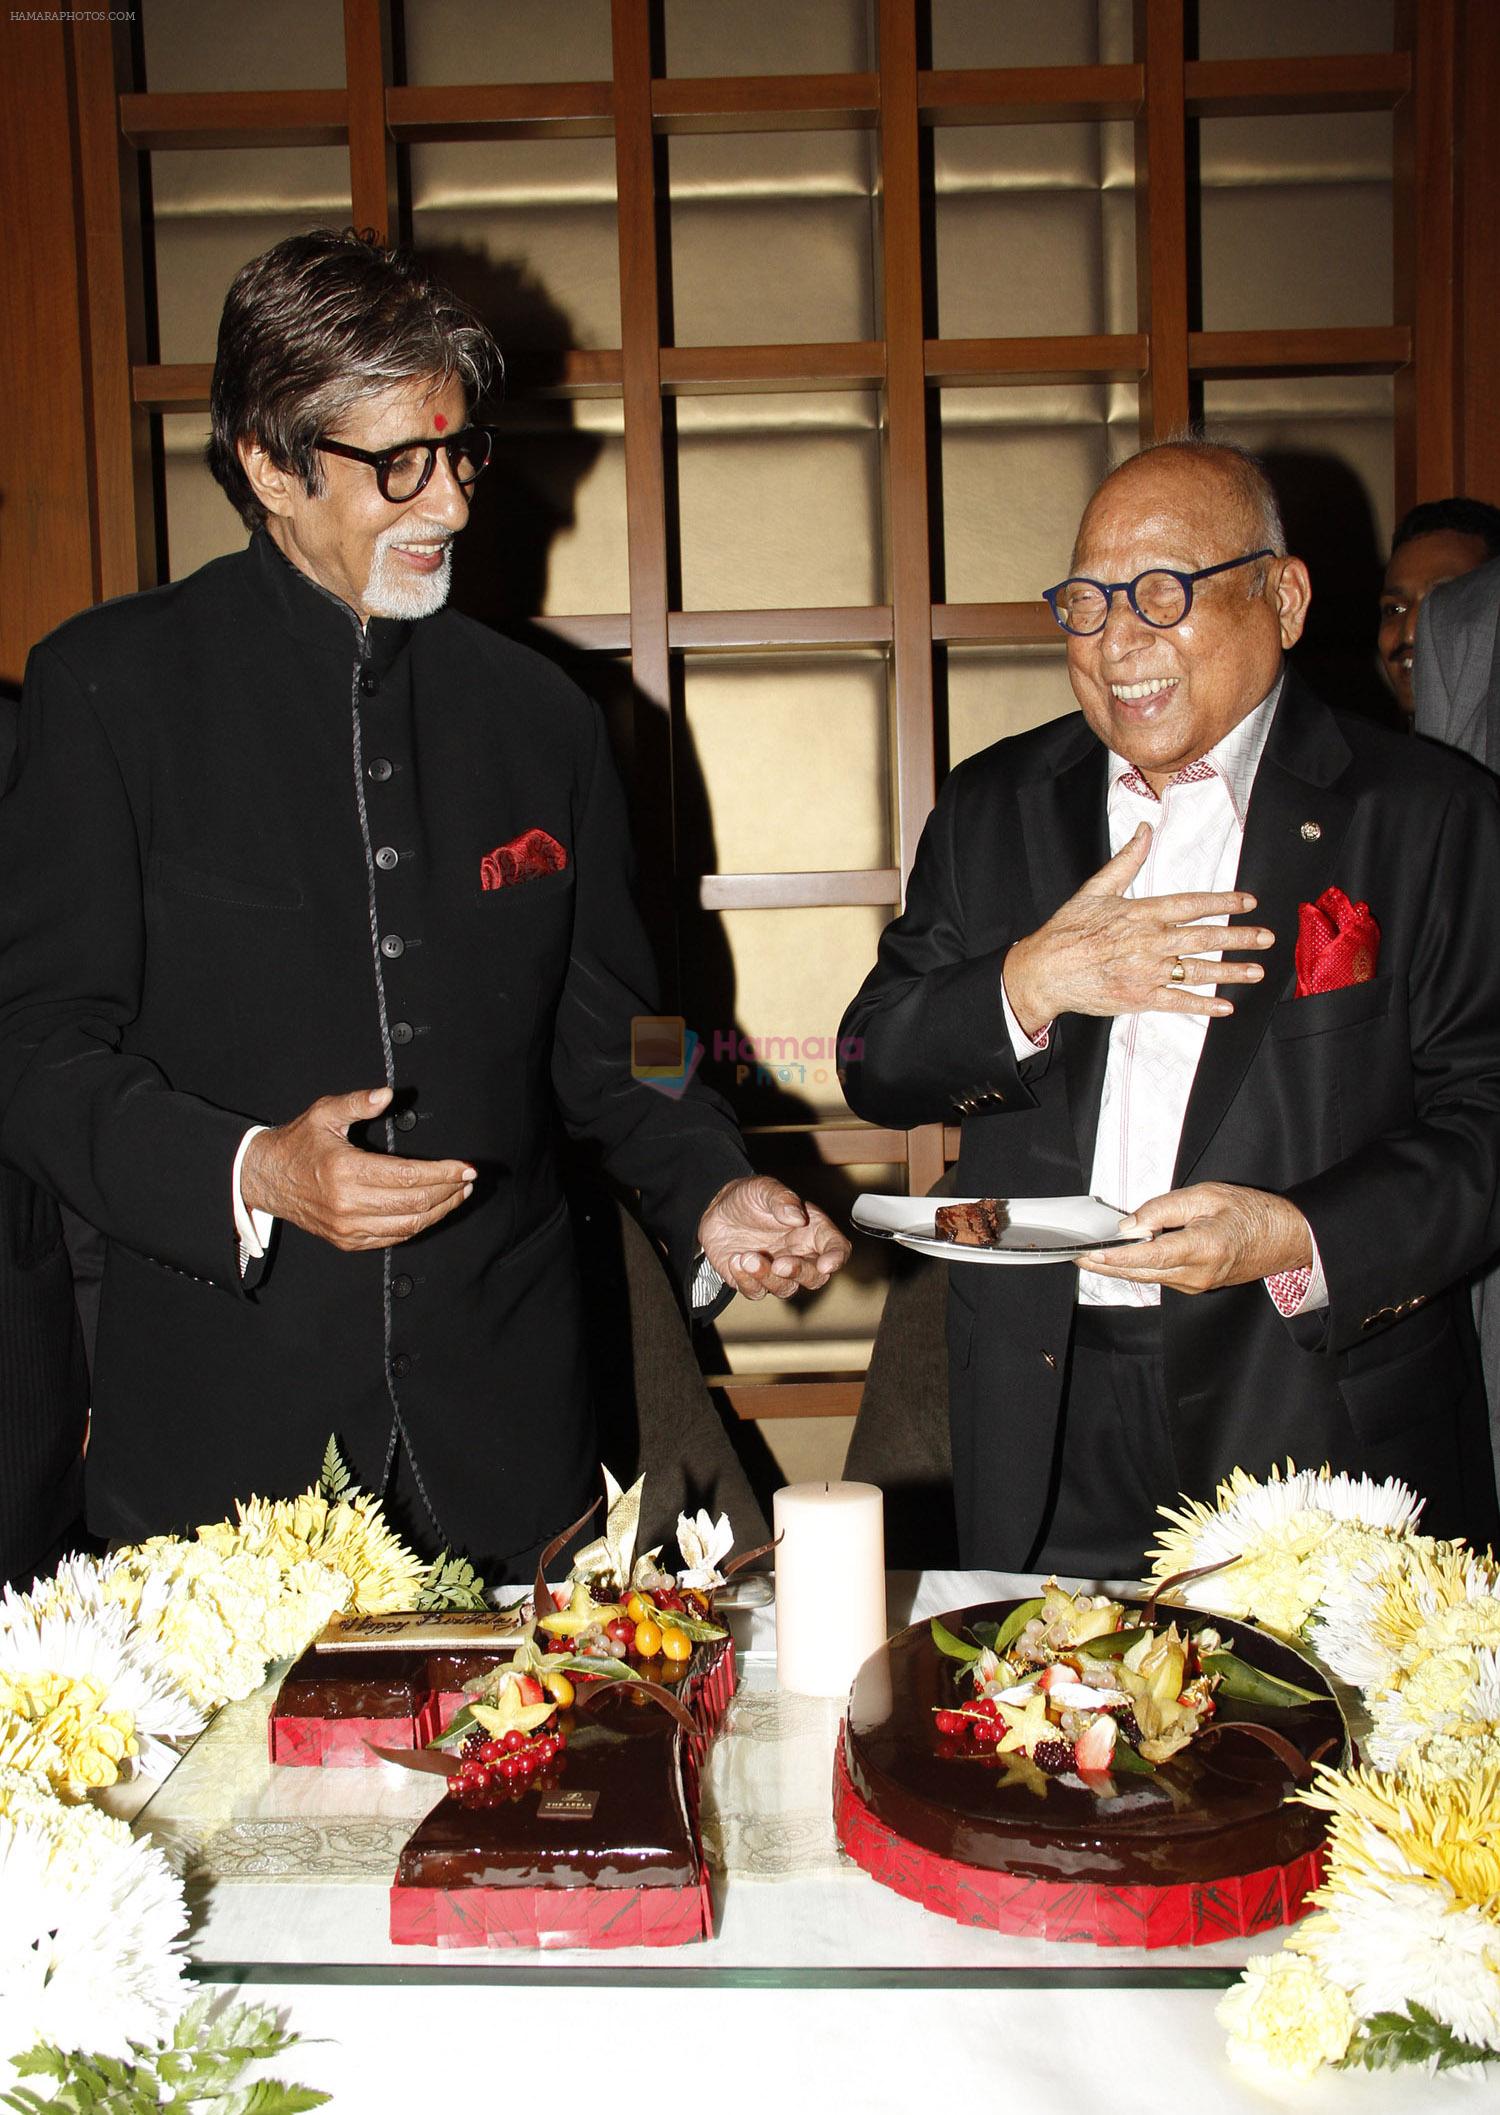 Amitabh Bachchan and Capt. Nair at the 70th birthday celebrations of Mr. Bachchan, at The Leela Mumbai